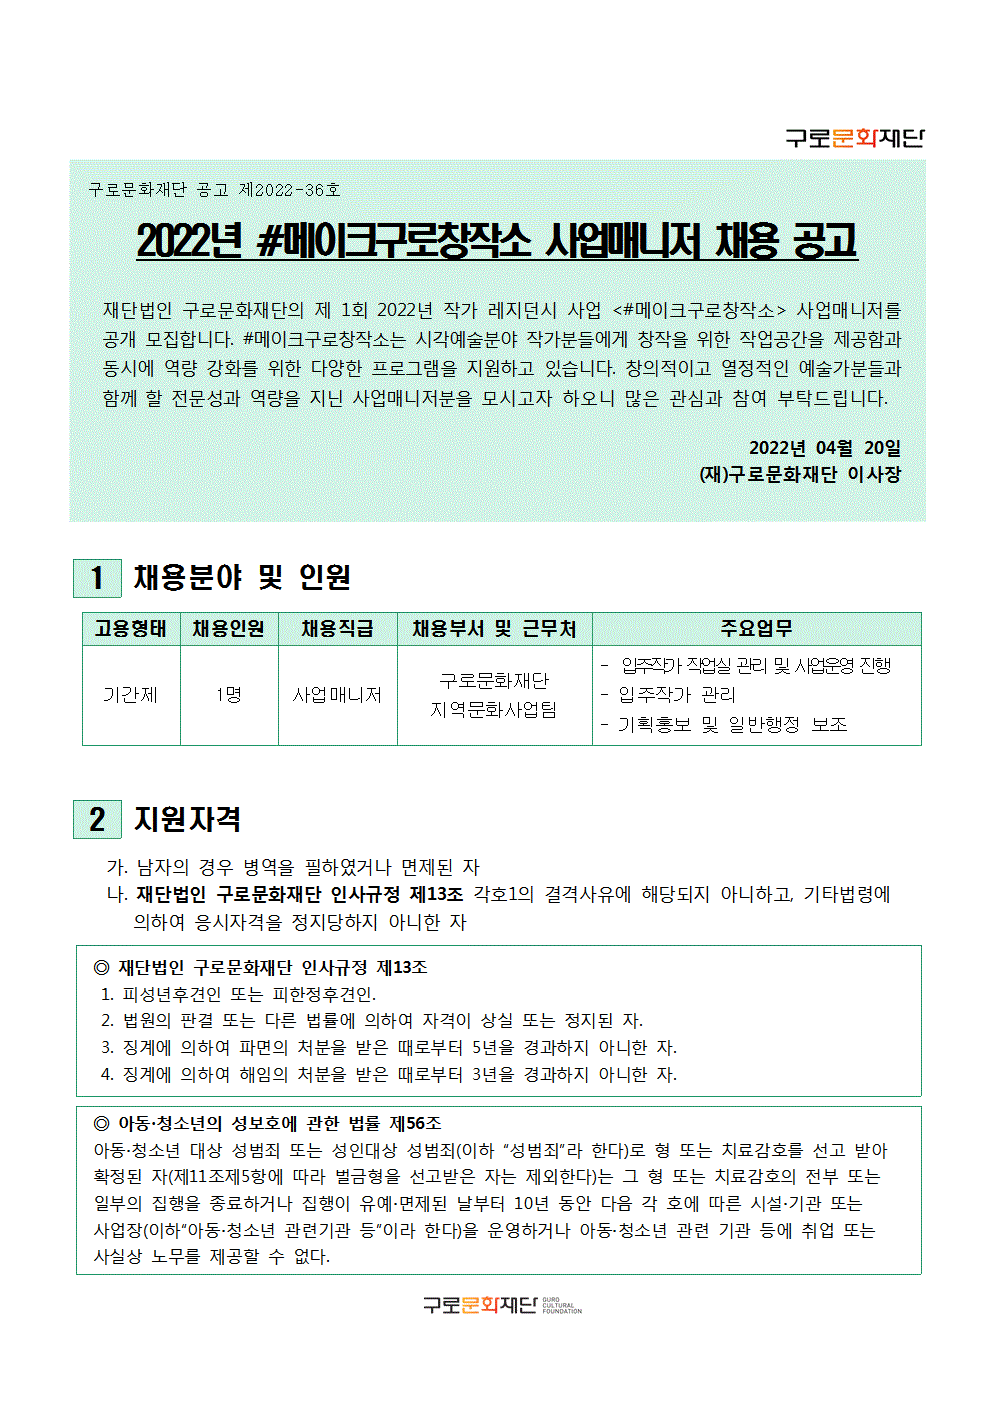 [붙임6]모집공고_2022 사업매니저001